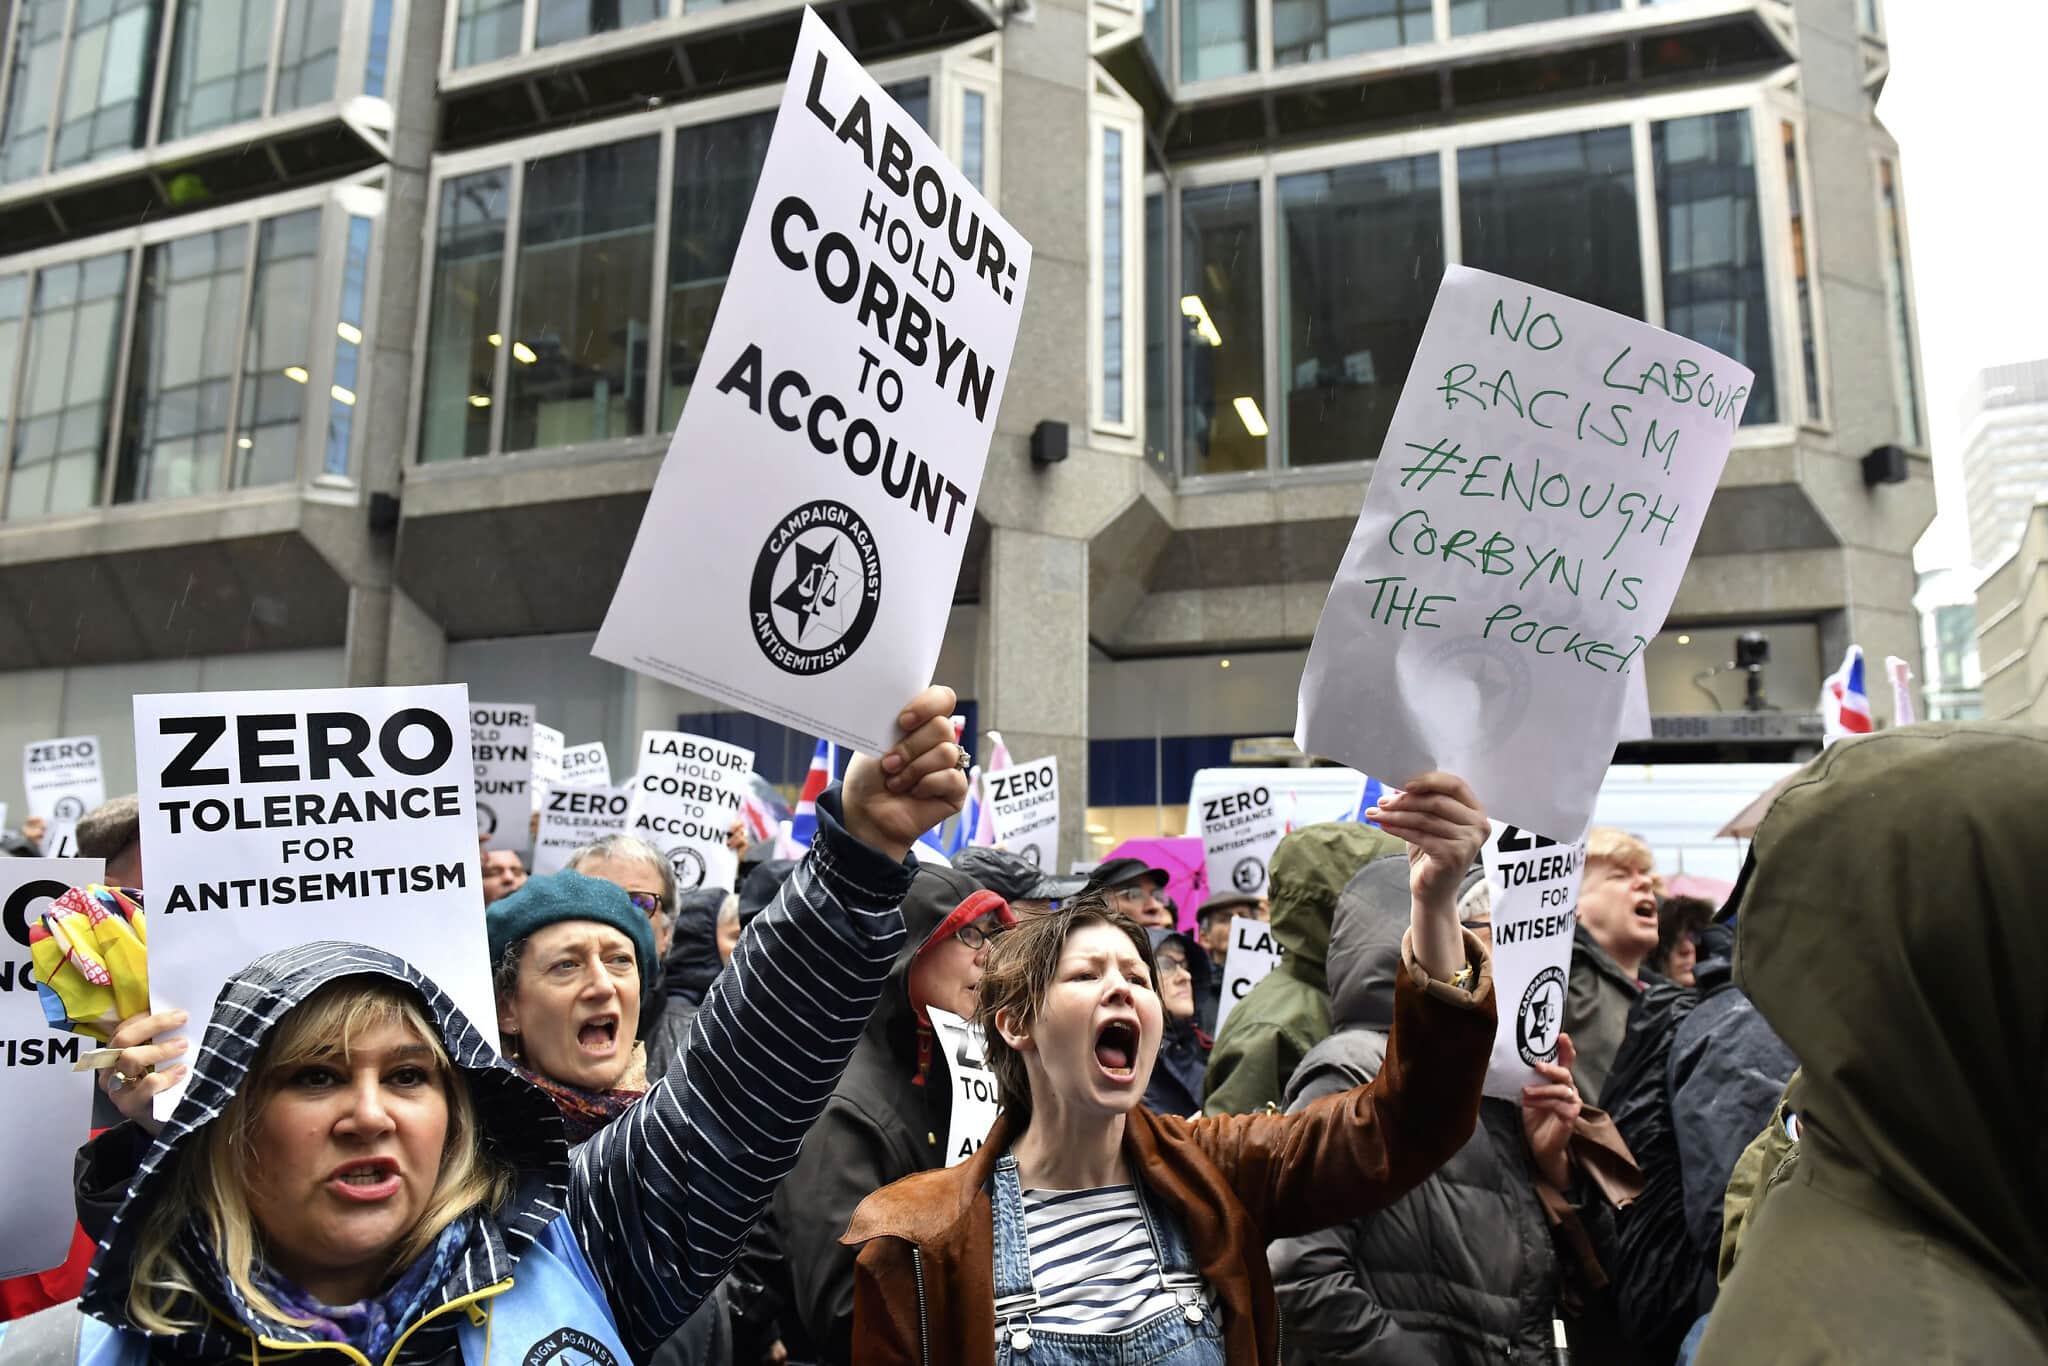 אילוסטרציה: מפגינים נגד אנטישמיות במפלגת הלייבור מול מטה המפלגה בלונדון, 8 באפריל 2018 (צילום: Dominic Lipinski/PA via AP)